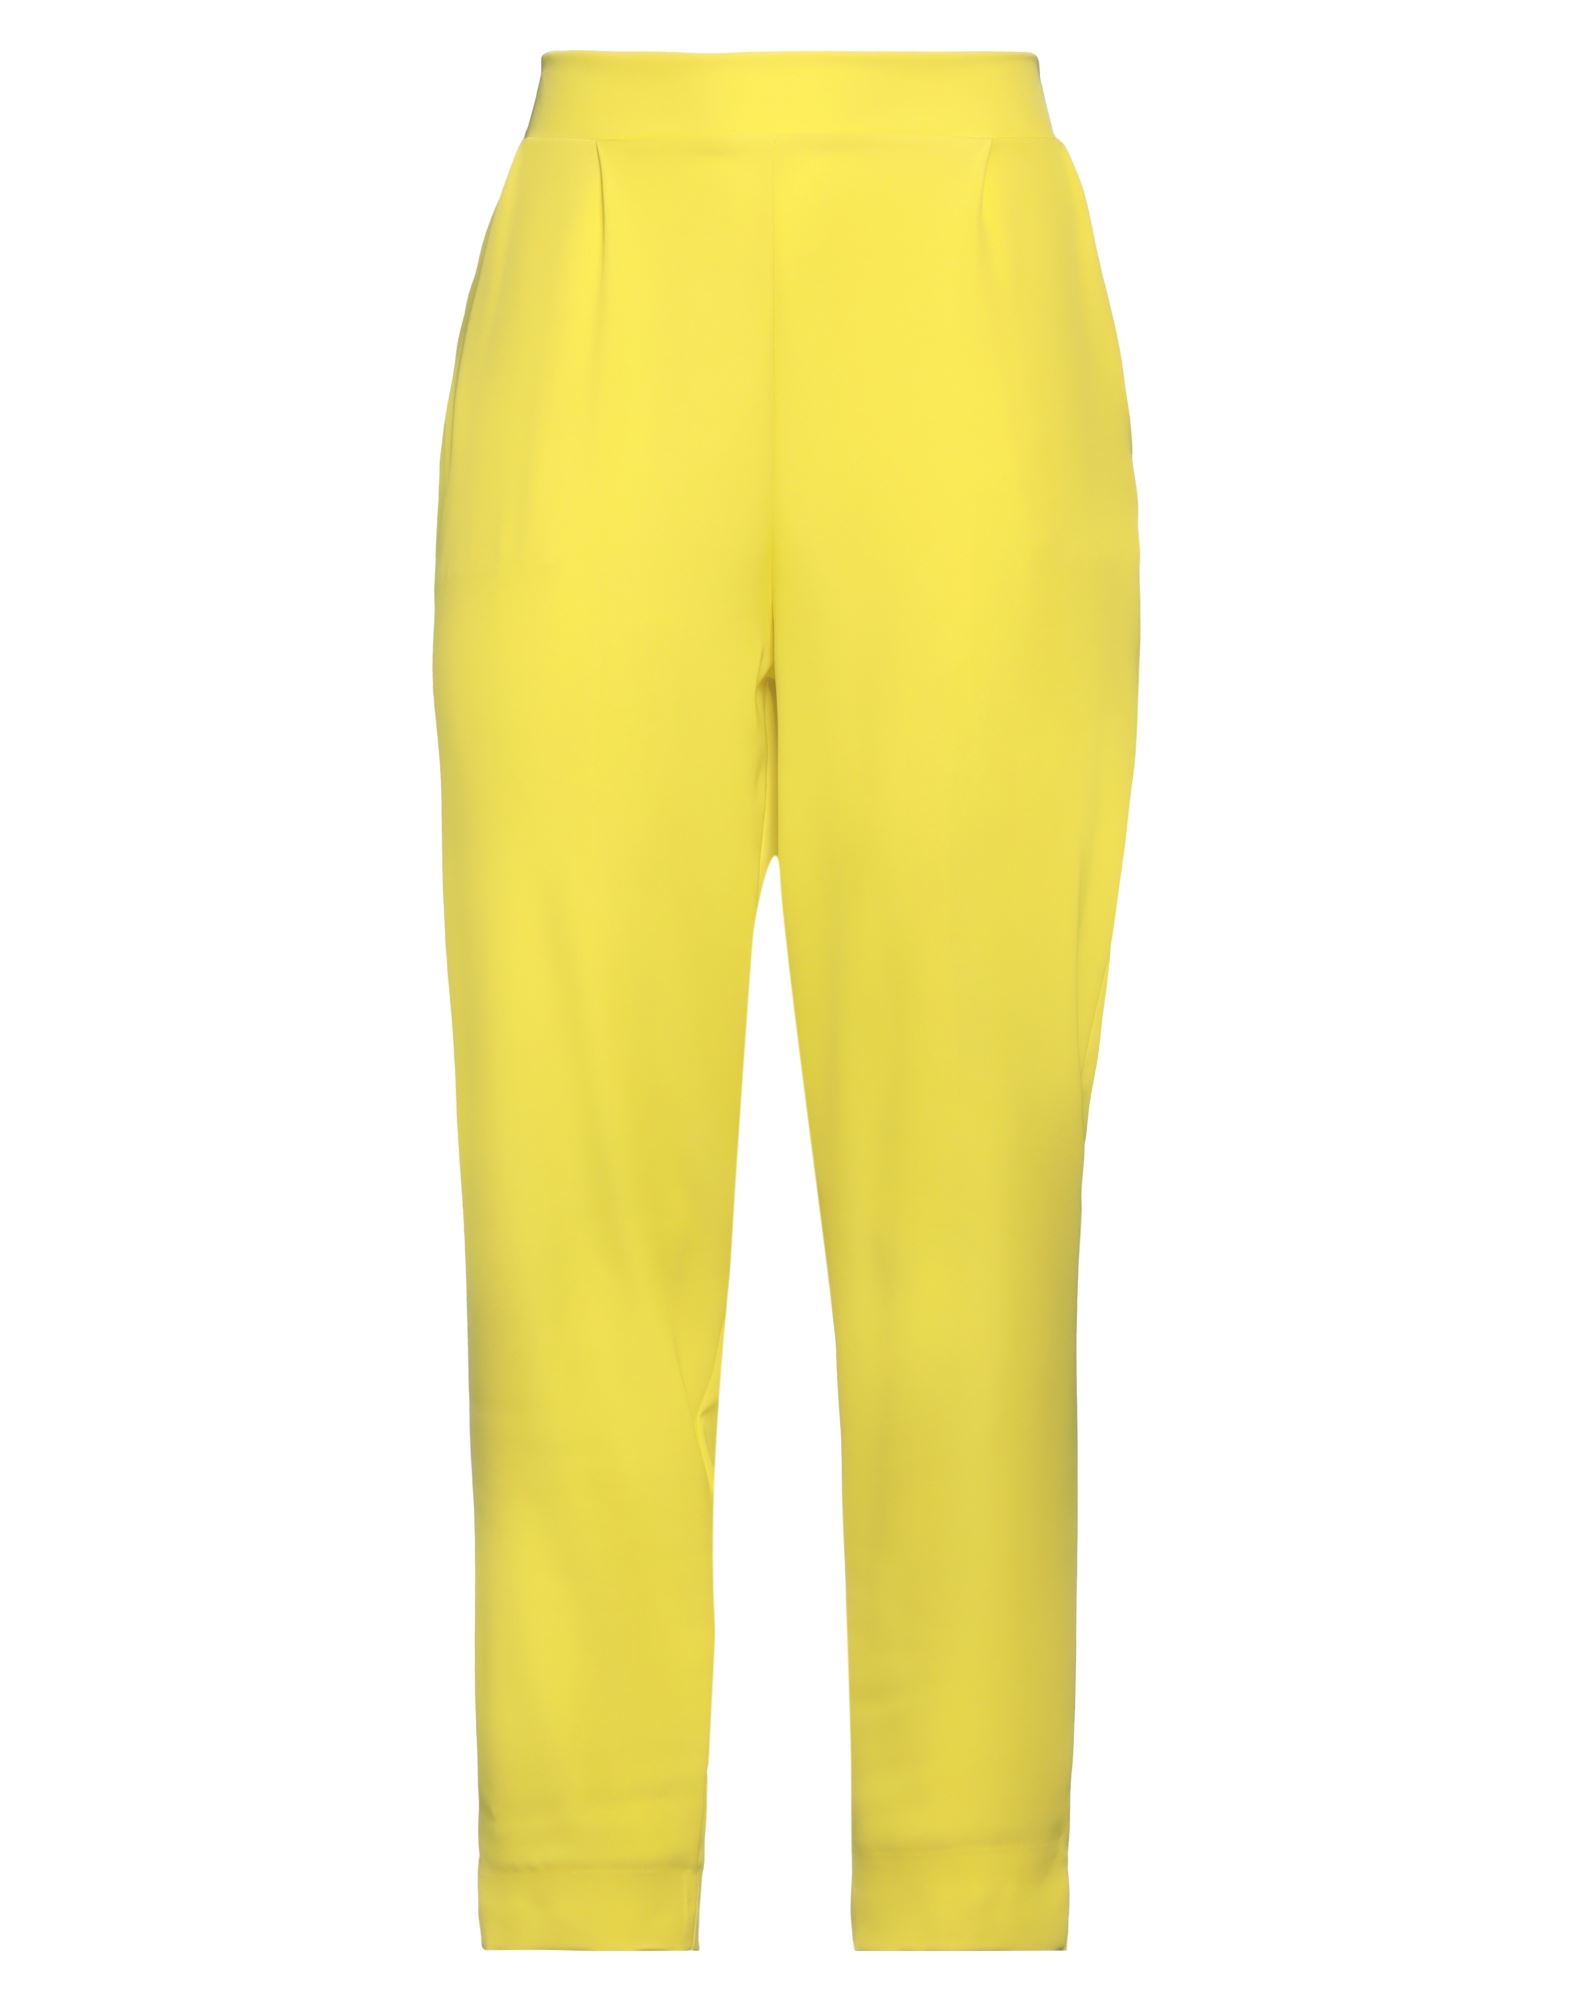 Siste's Woman Pants Yellow Size M Polyester, Elastane